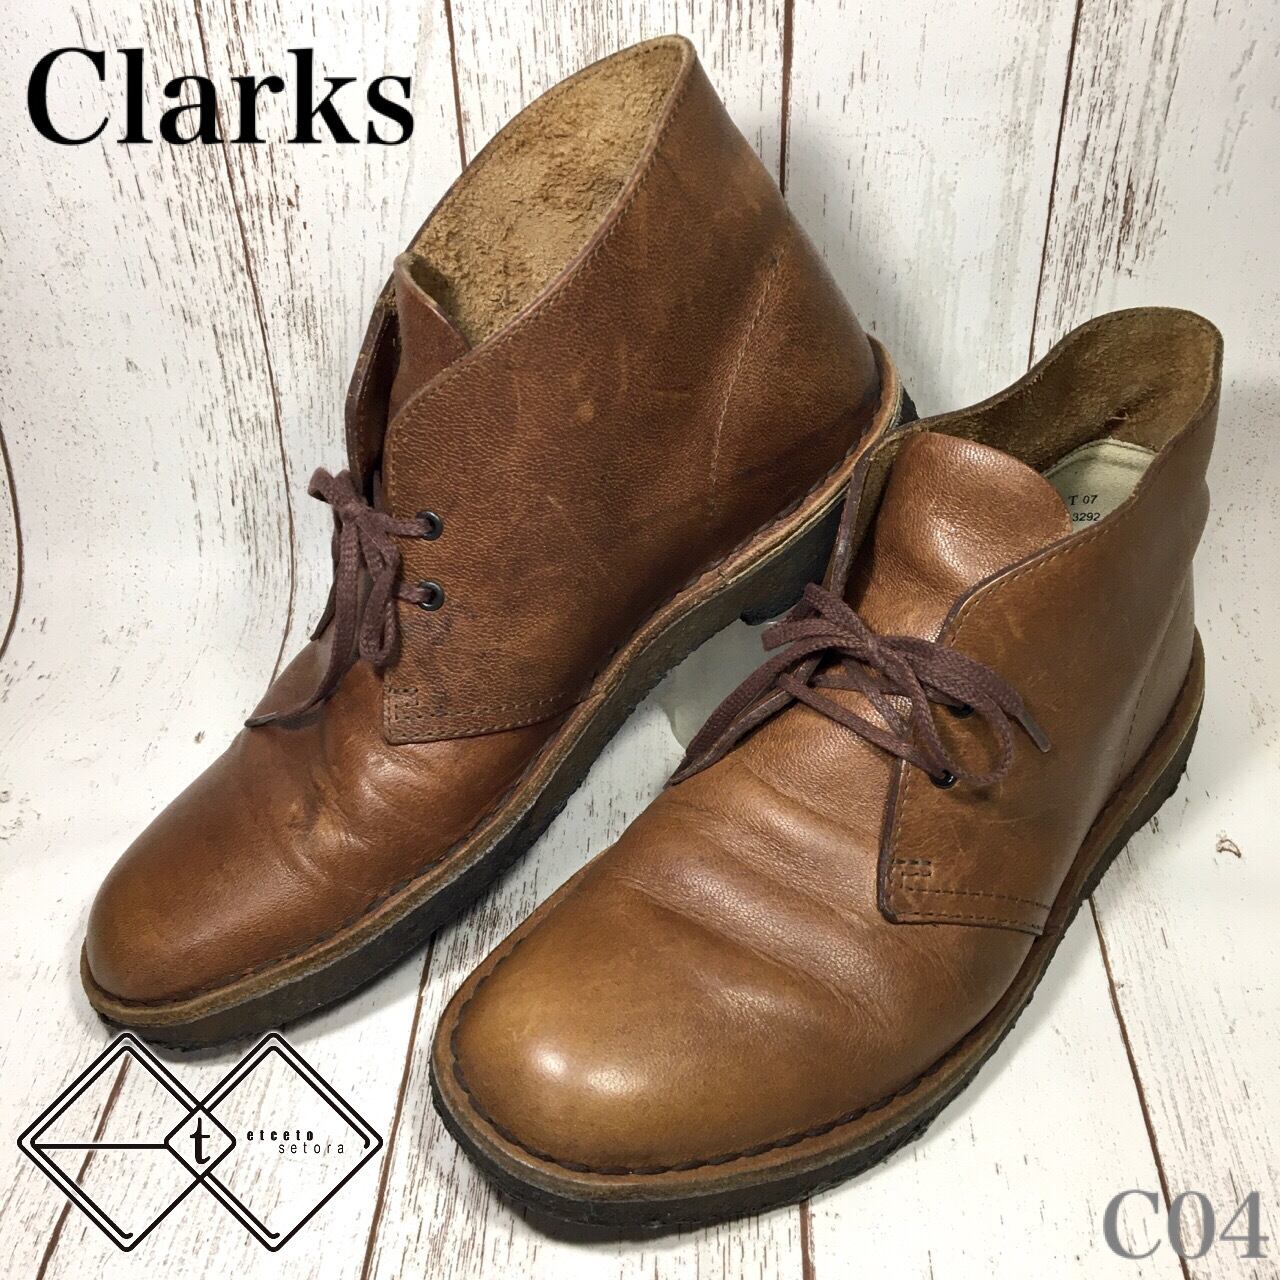 クラークス Clarks デザートブーツ レザー ブラウン US8.5 C04 